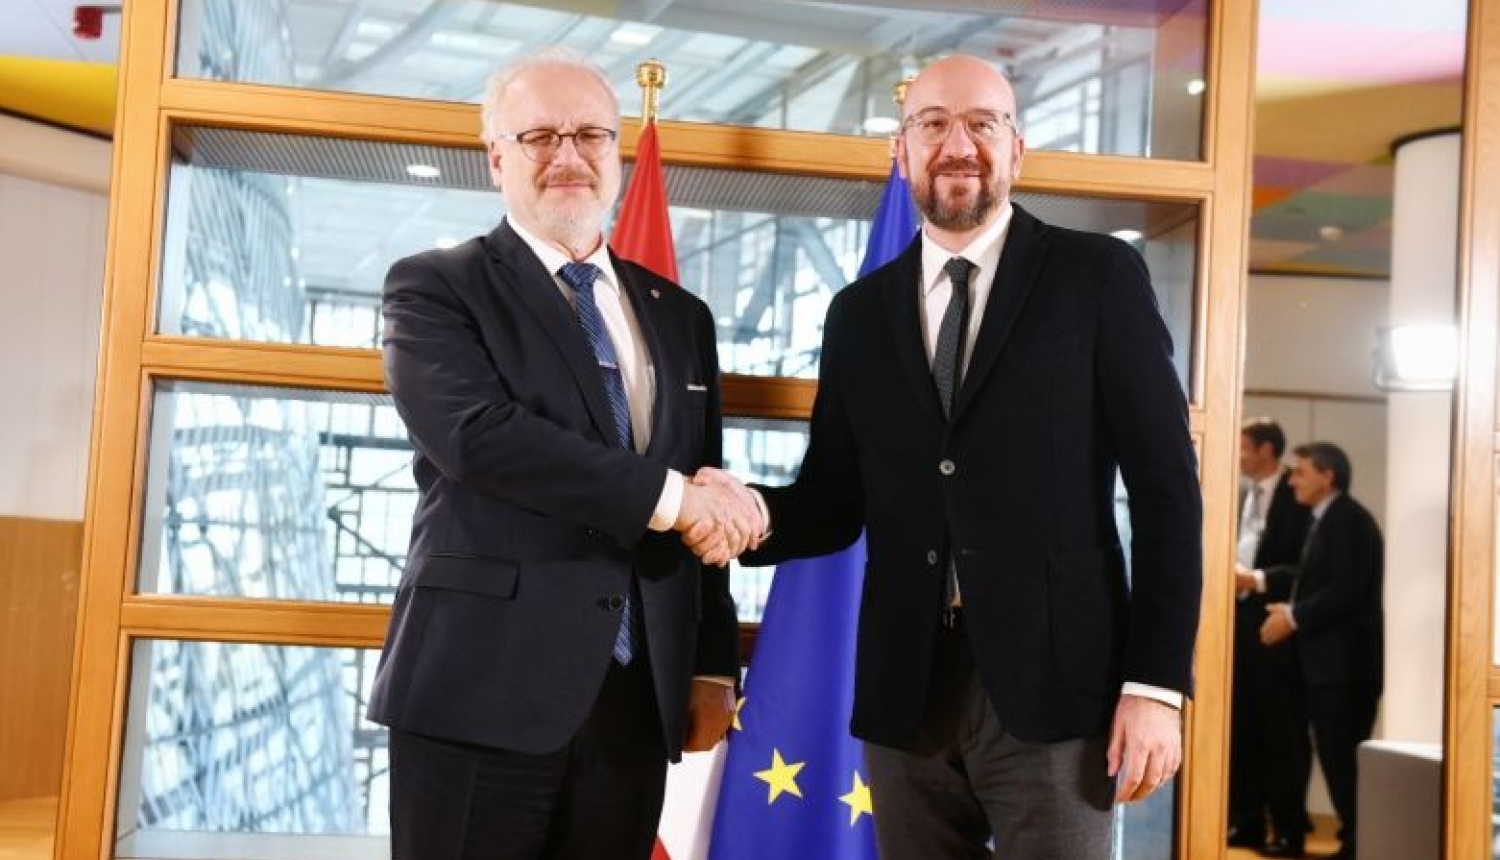 Valsts prezidents: ES jāuzņemas vadošā loma ceļā uz klimatneitralitāti